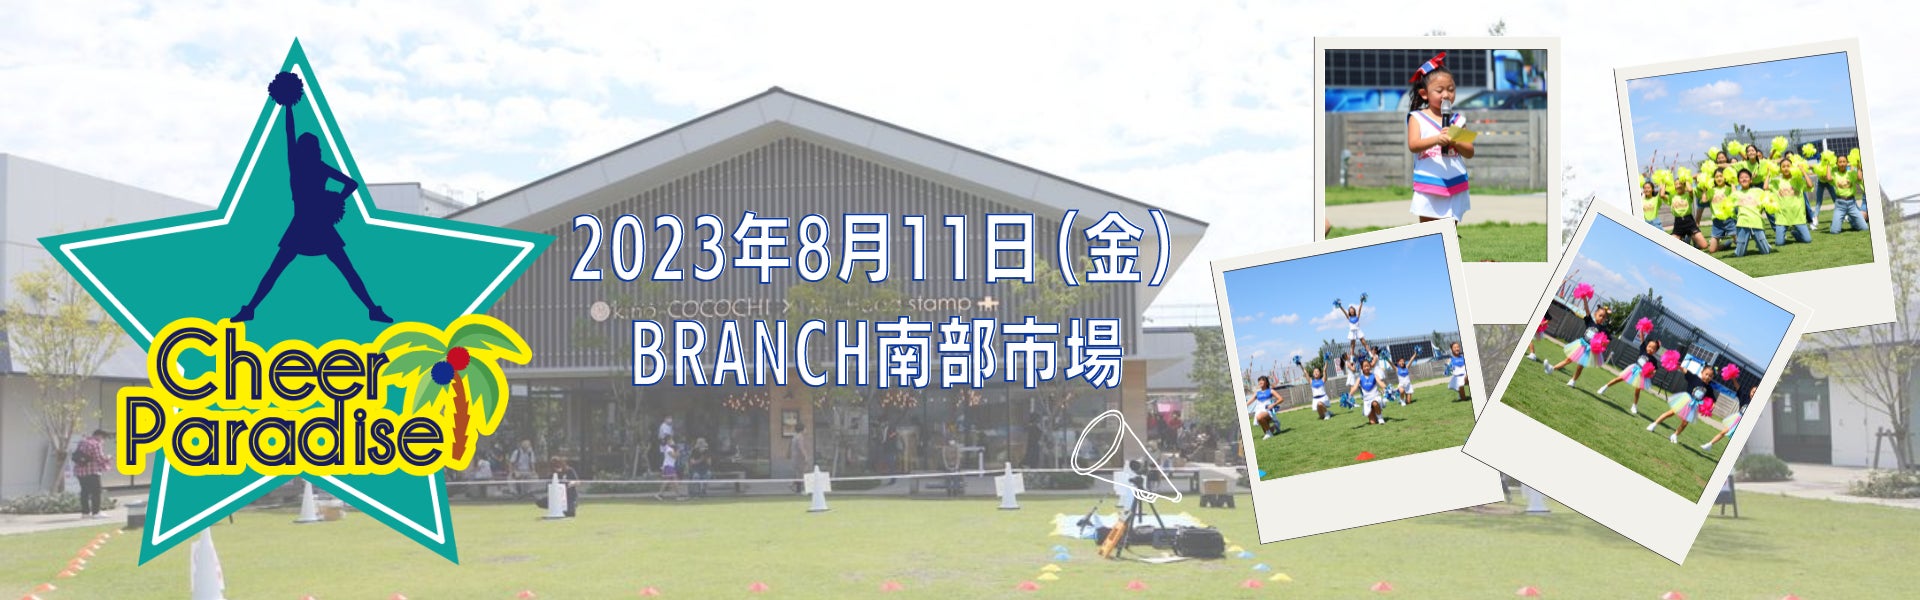 2023年8月11日（金）チアイベント「Cheer Paradise BRANCH横浜南部市場」開催のサブ画像1